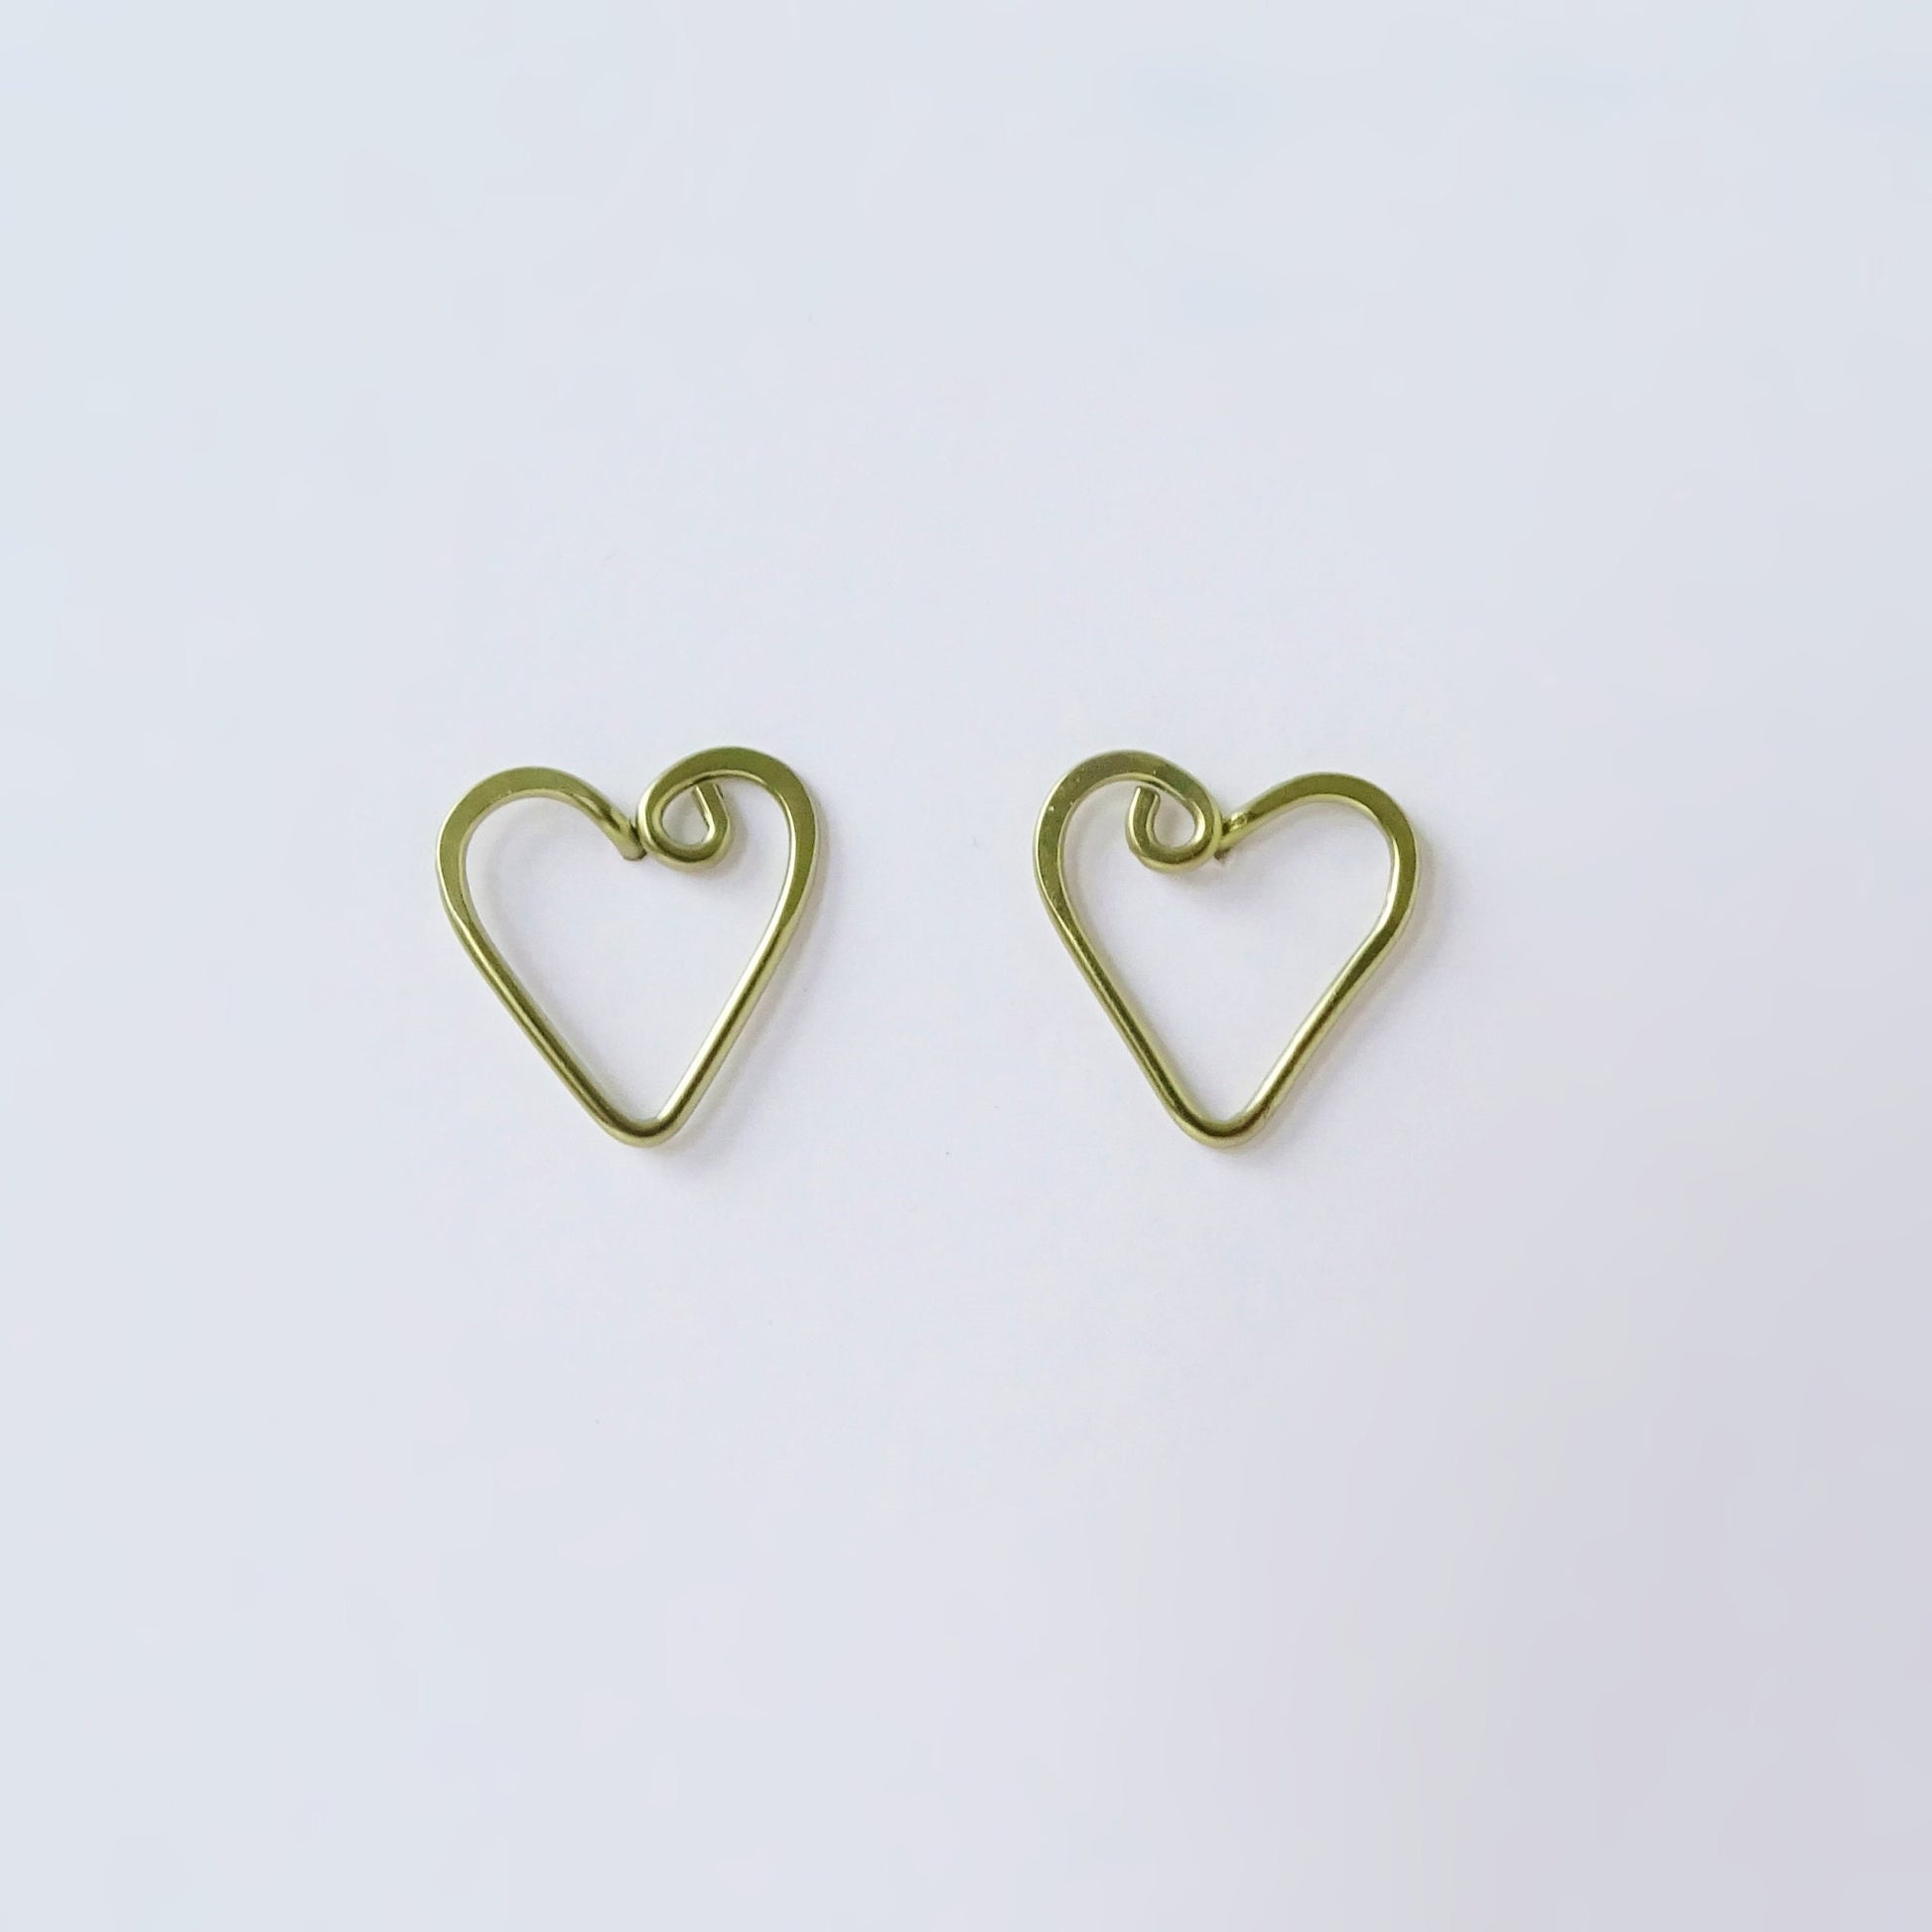 Small Heart Studs Gold Niobium Post Earrings, Swirl Love Heart Posts, Hypoallergenic Nickel Free Open Heart Stud Earrings for Sensitive Ears